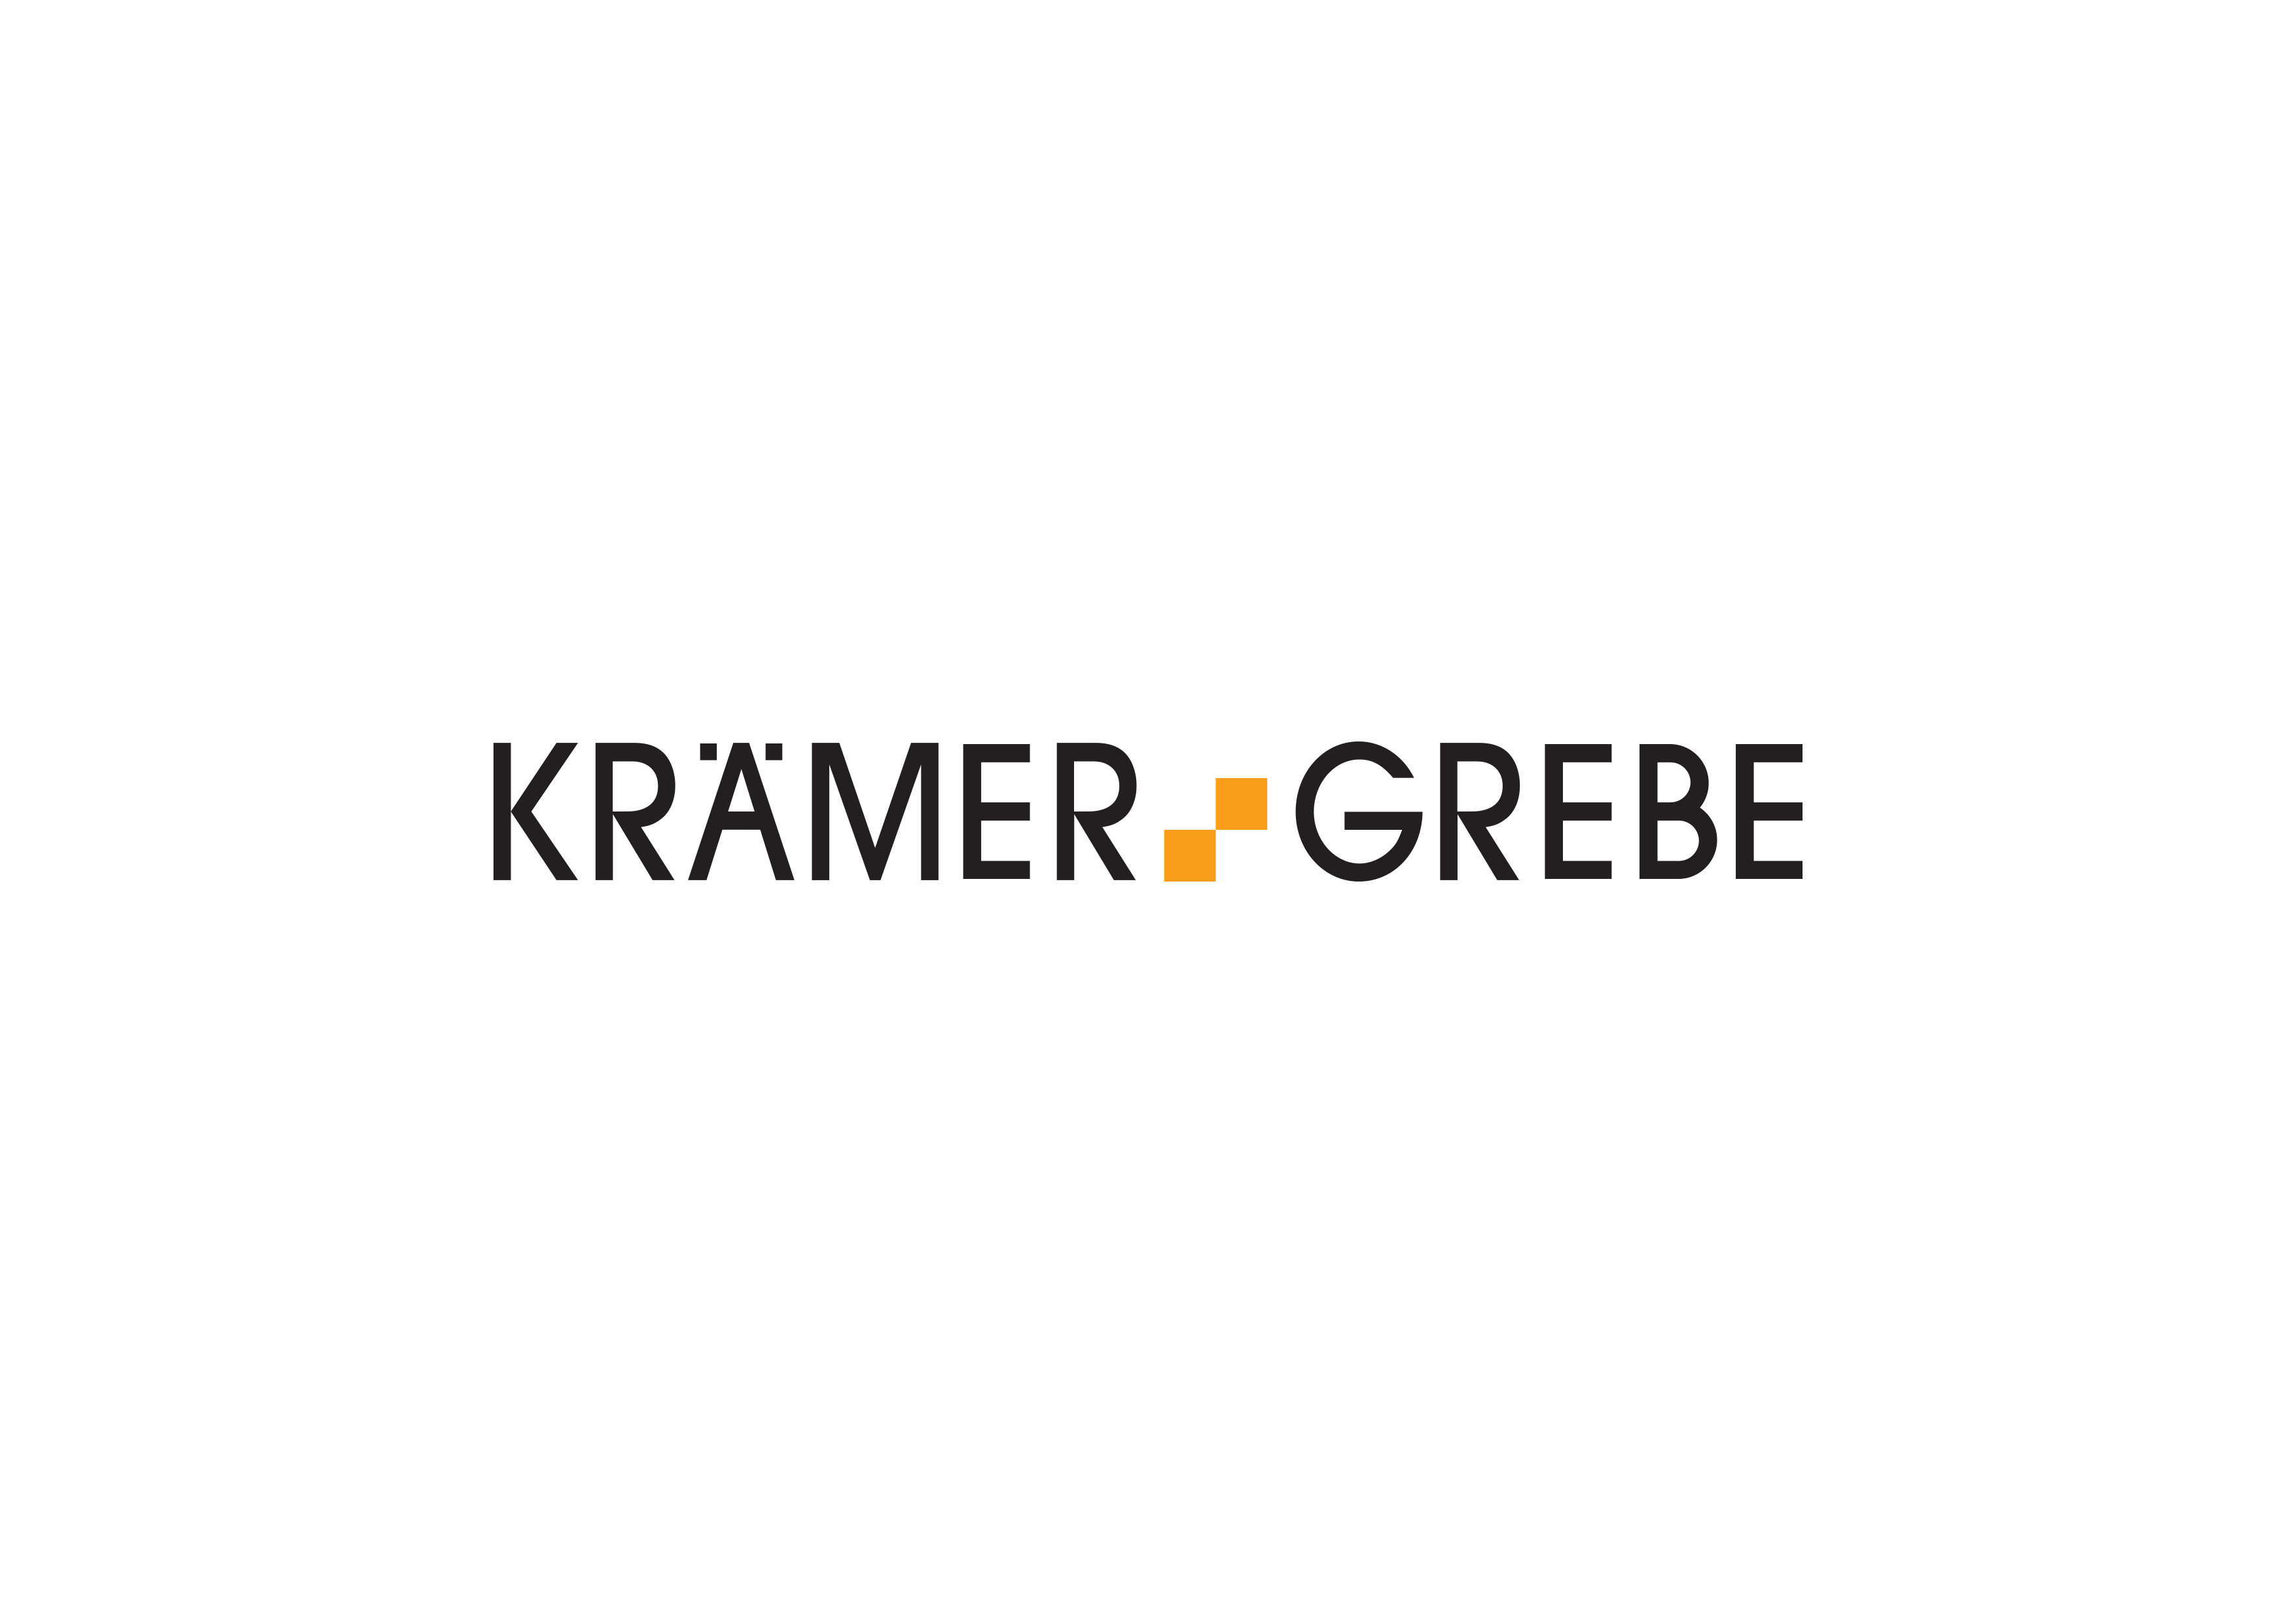 KRÄMER+GREBE